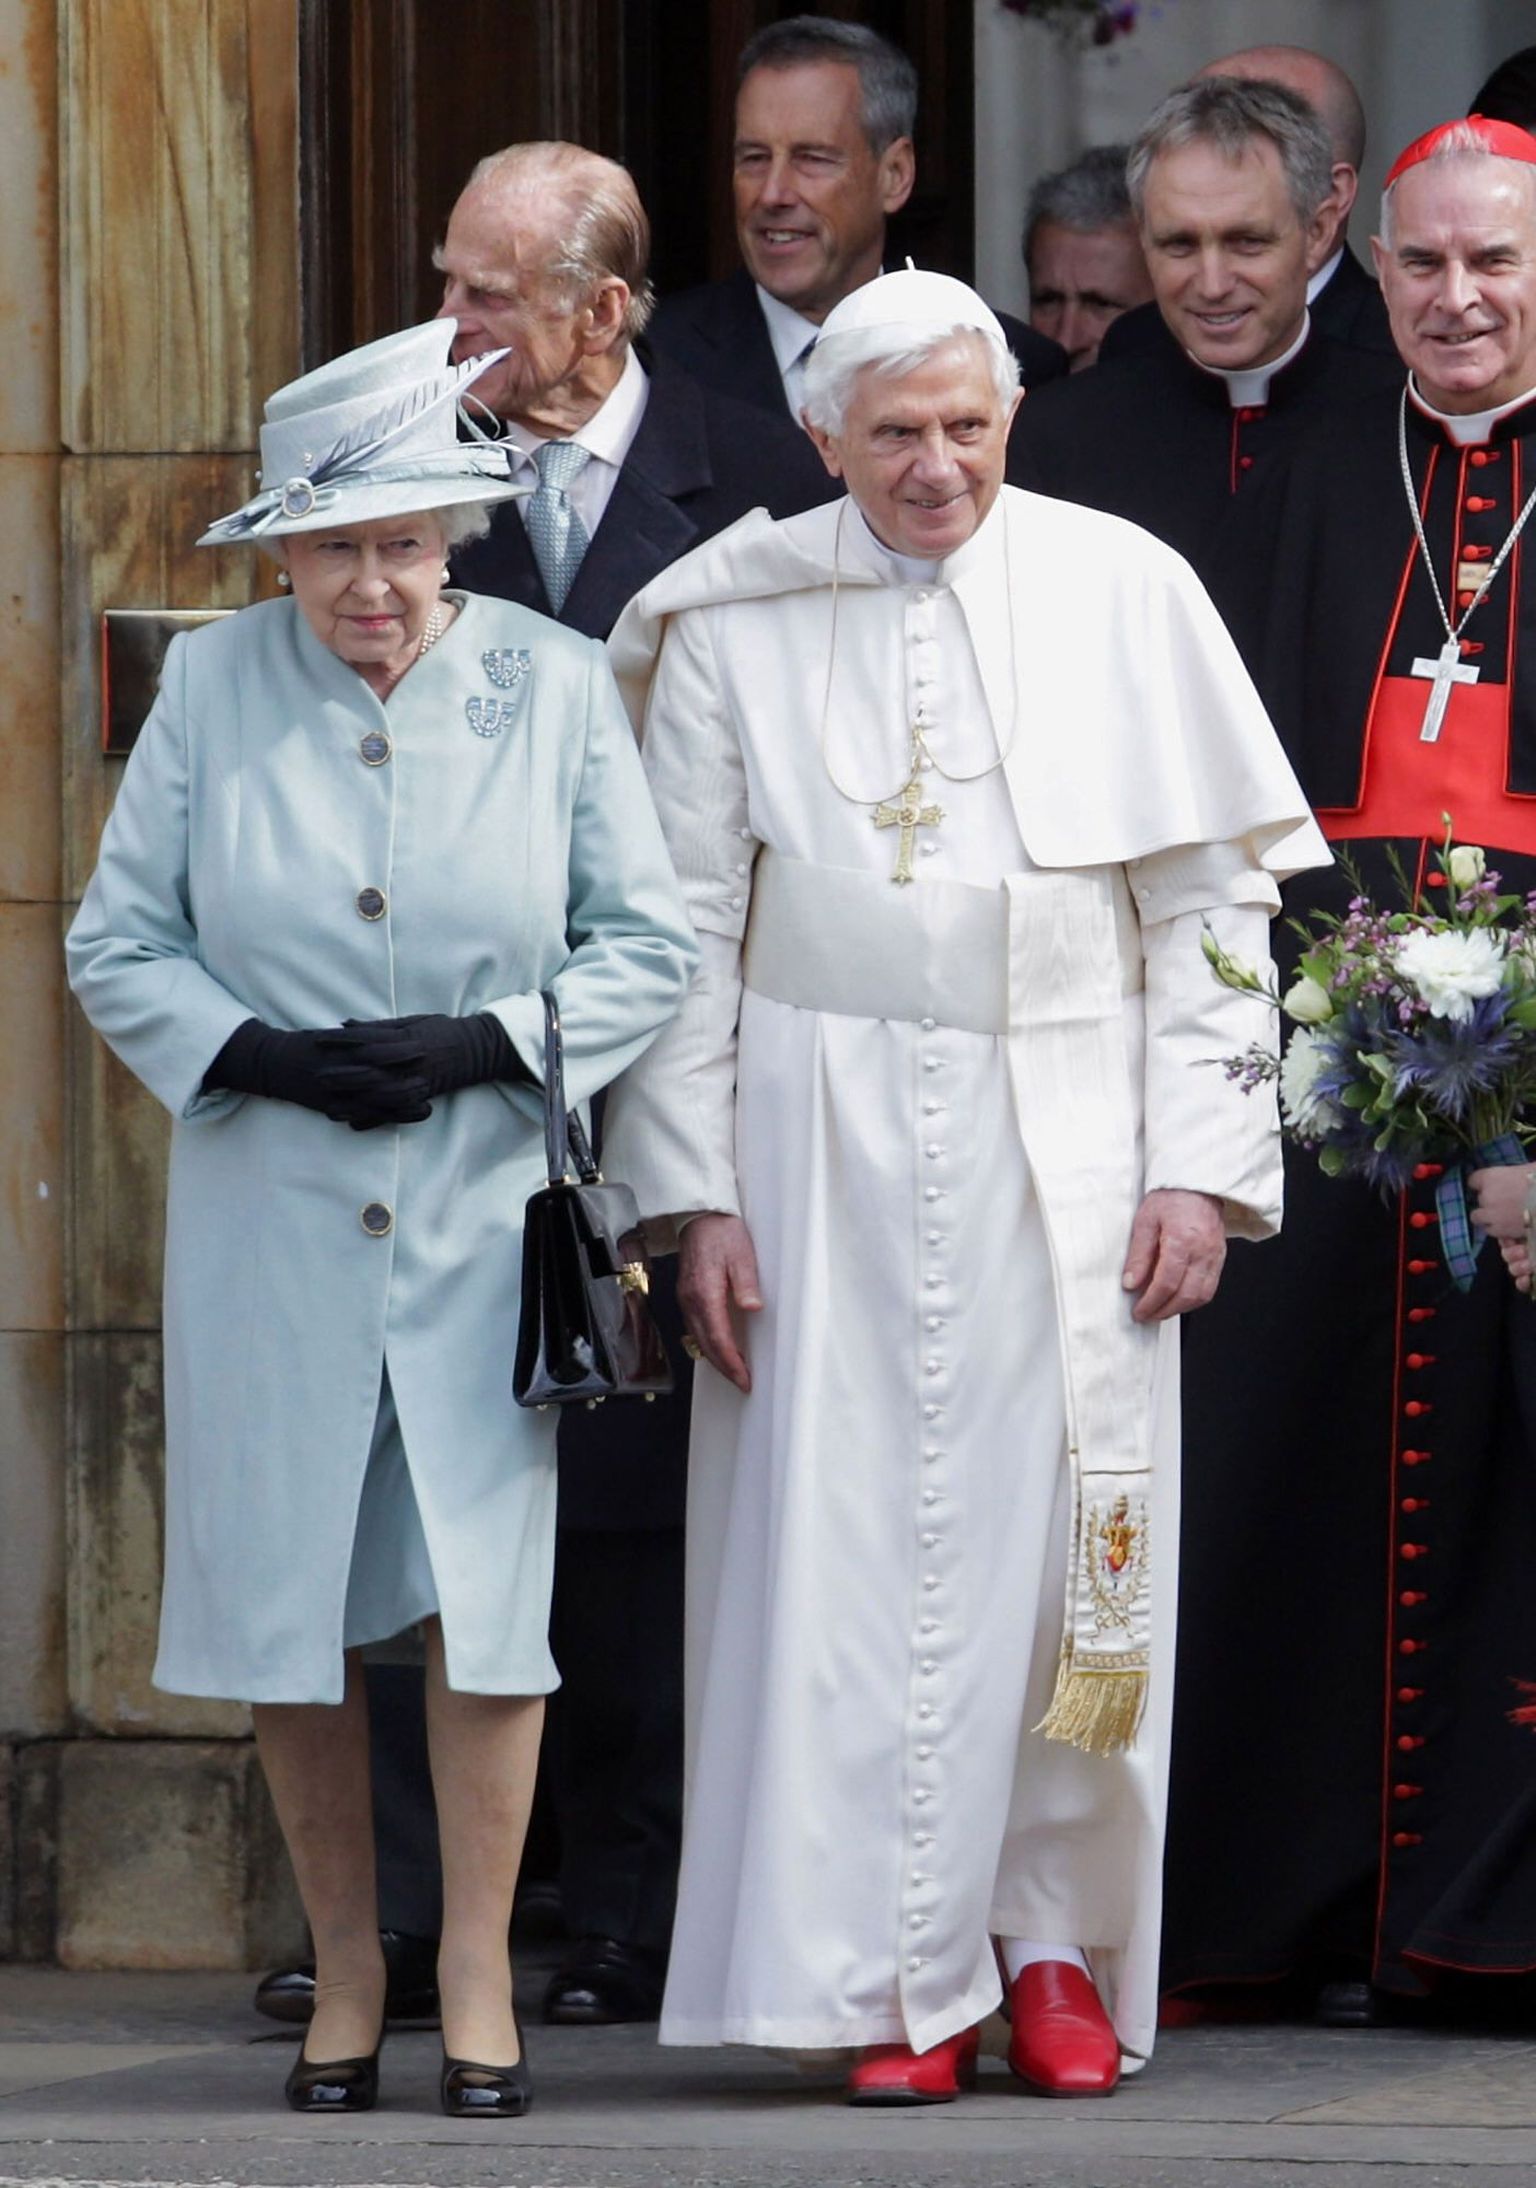 Kuninganna Elizabeth II ja paavst Benedictus XVI